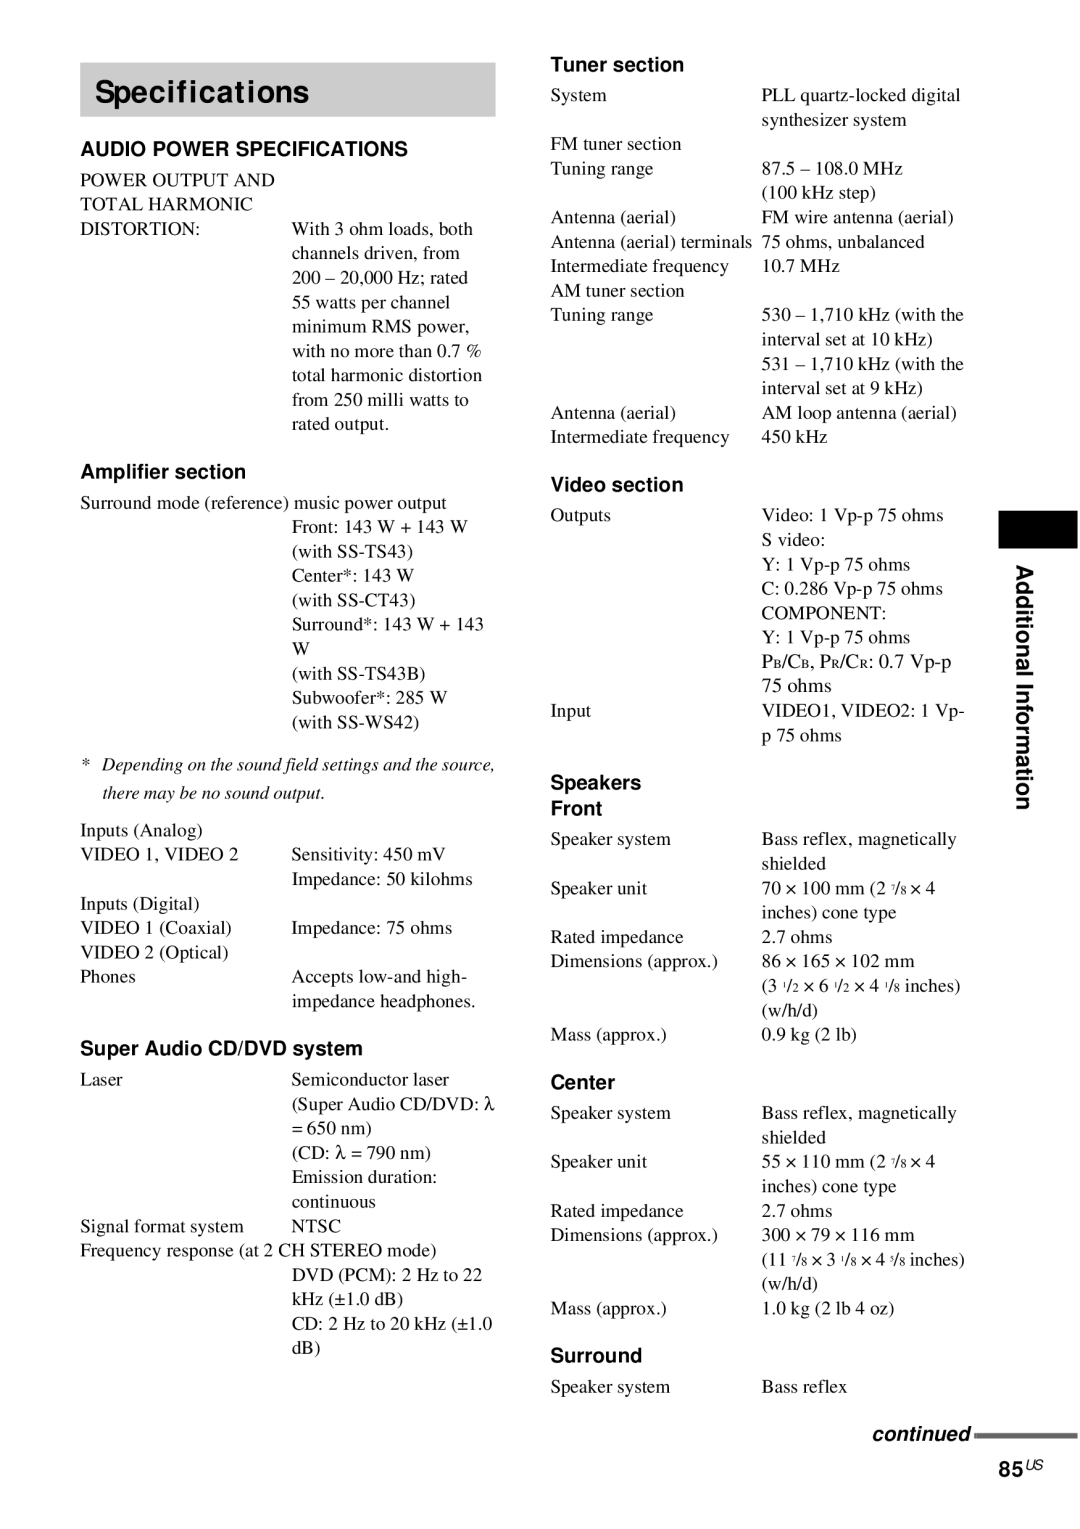 Sony DAV-FX10 manual Specifications, 85US 